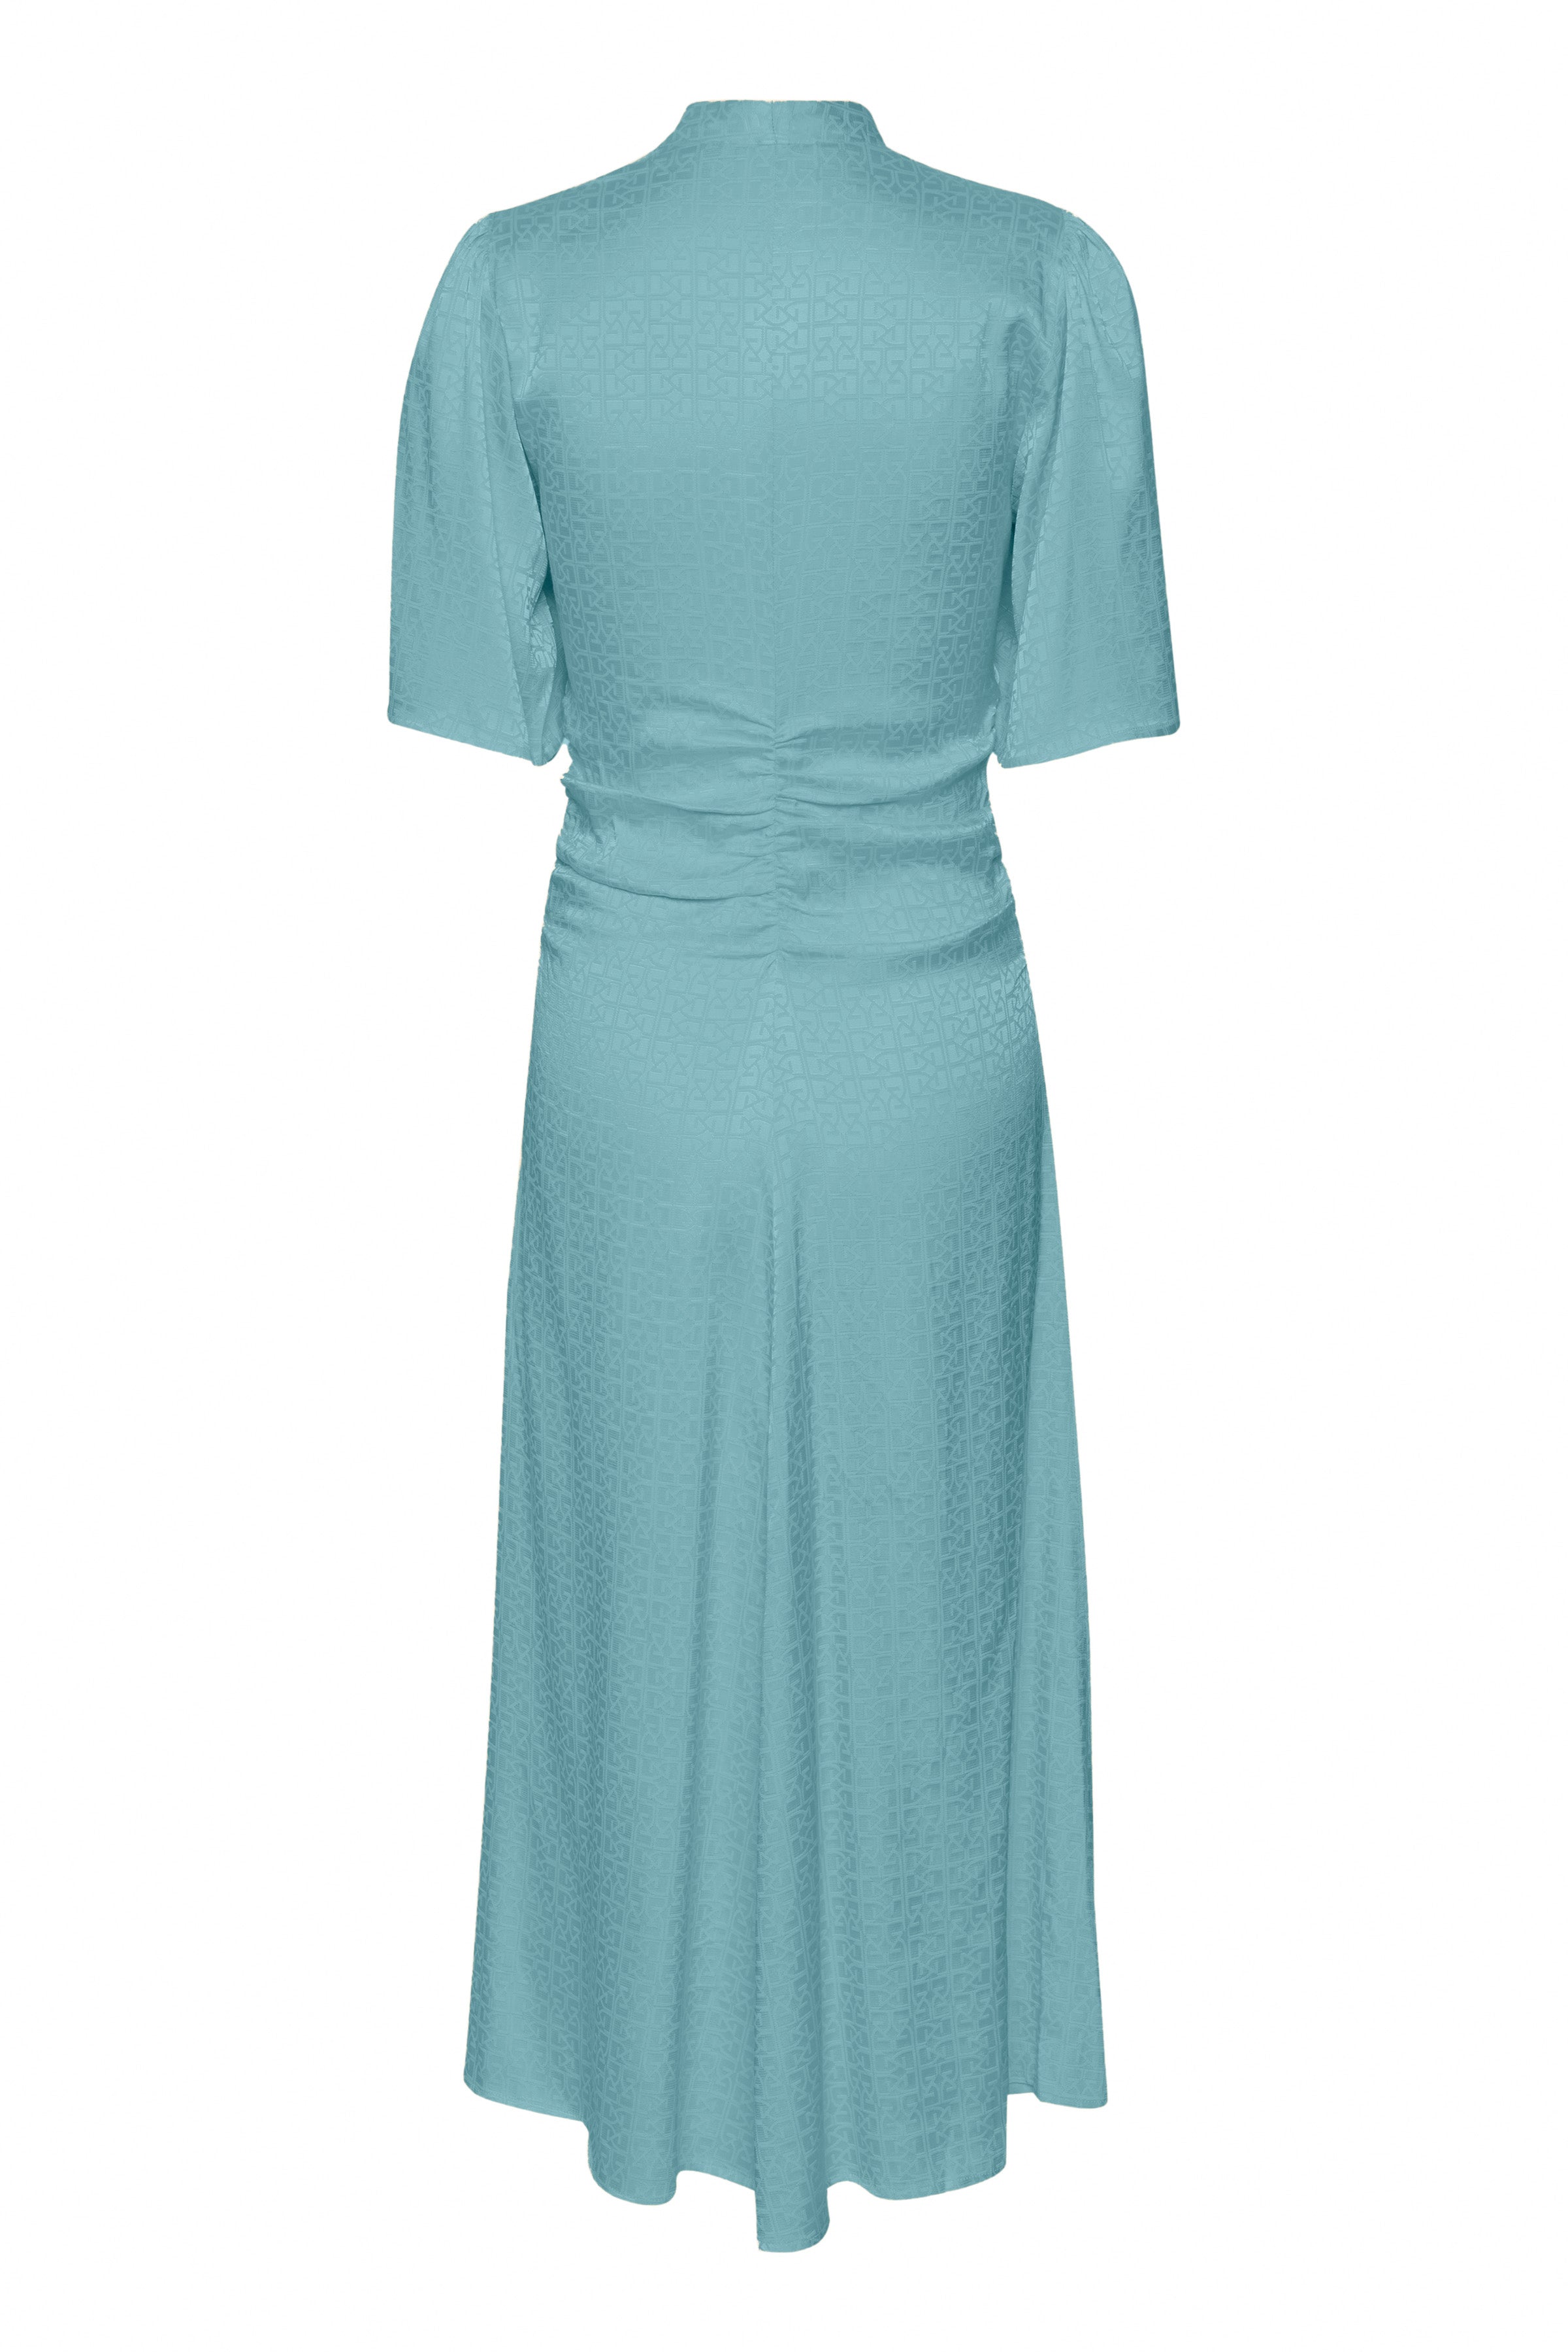 BrinaGZ Midi Ss Dress - Brittany Blue